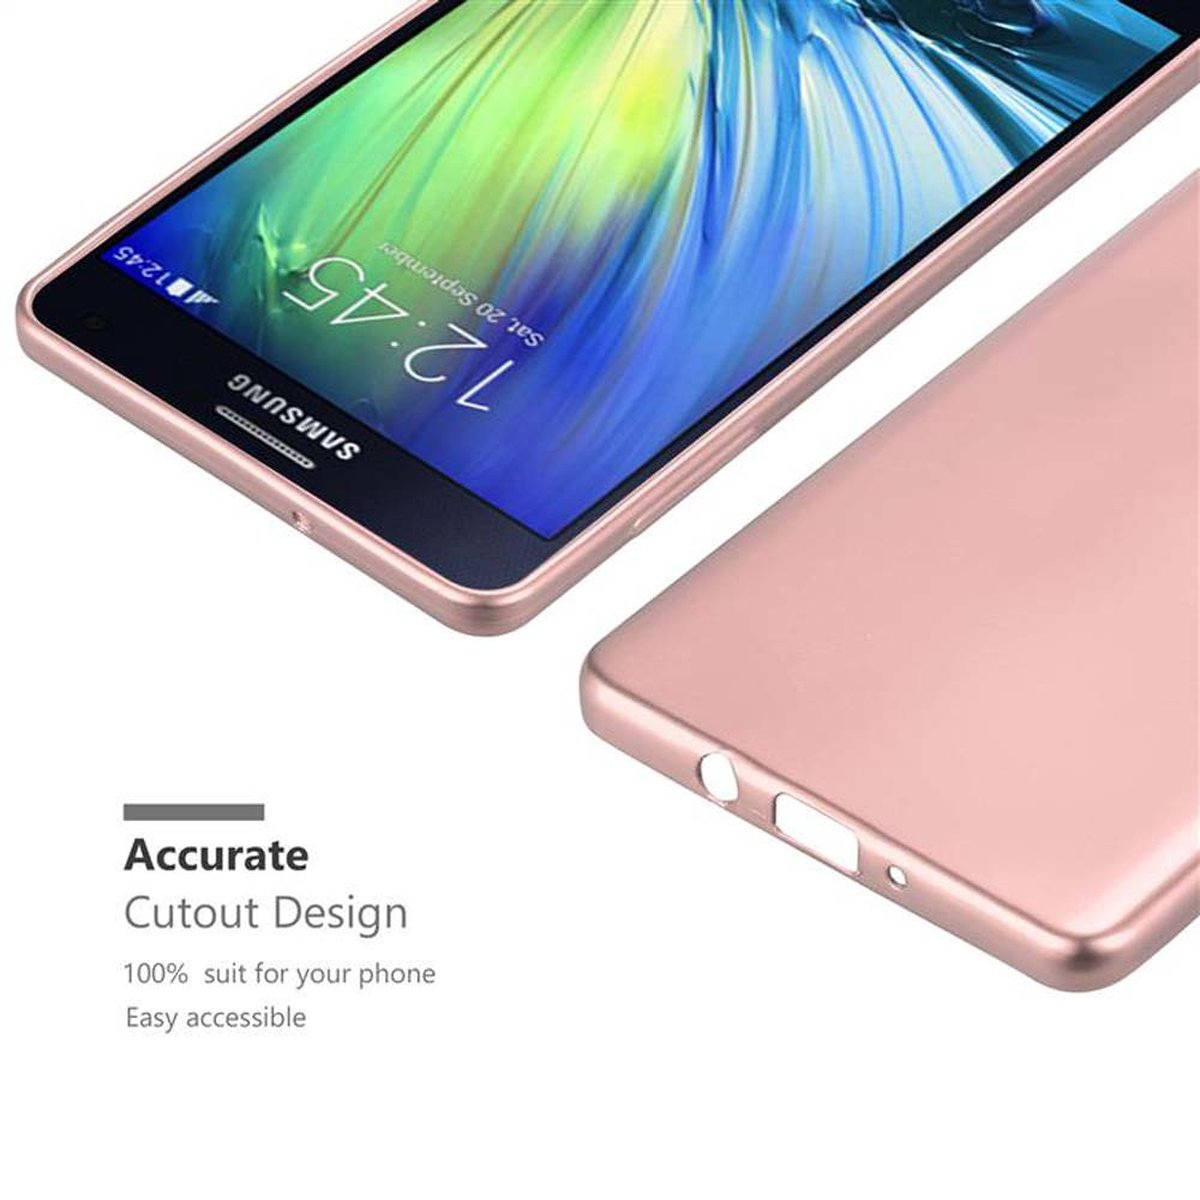 CADORABO TPU Matt Metallic METALLIC ROSÉ Galaxy Samsung, 2015, Hülle, GOLD A7 Backcover